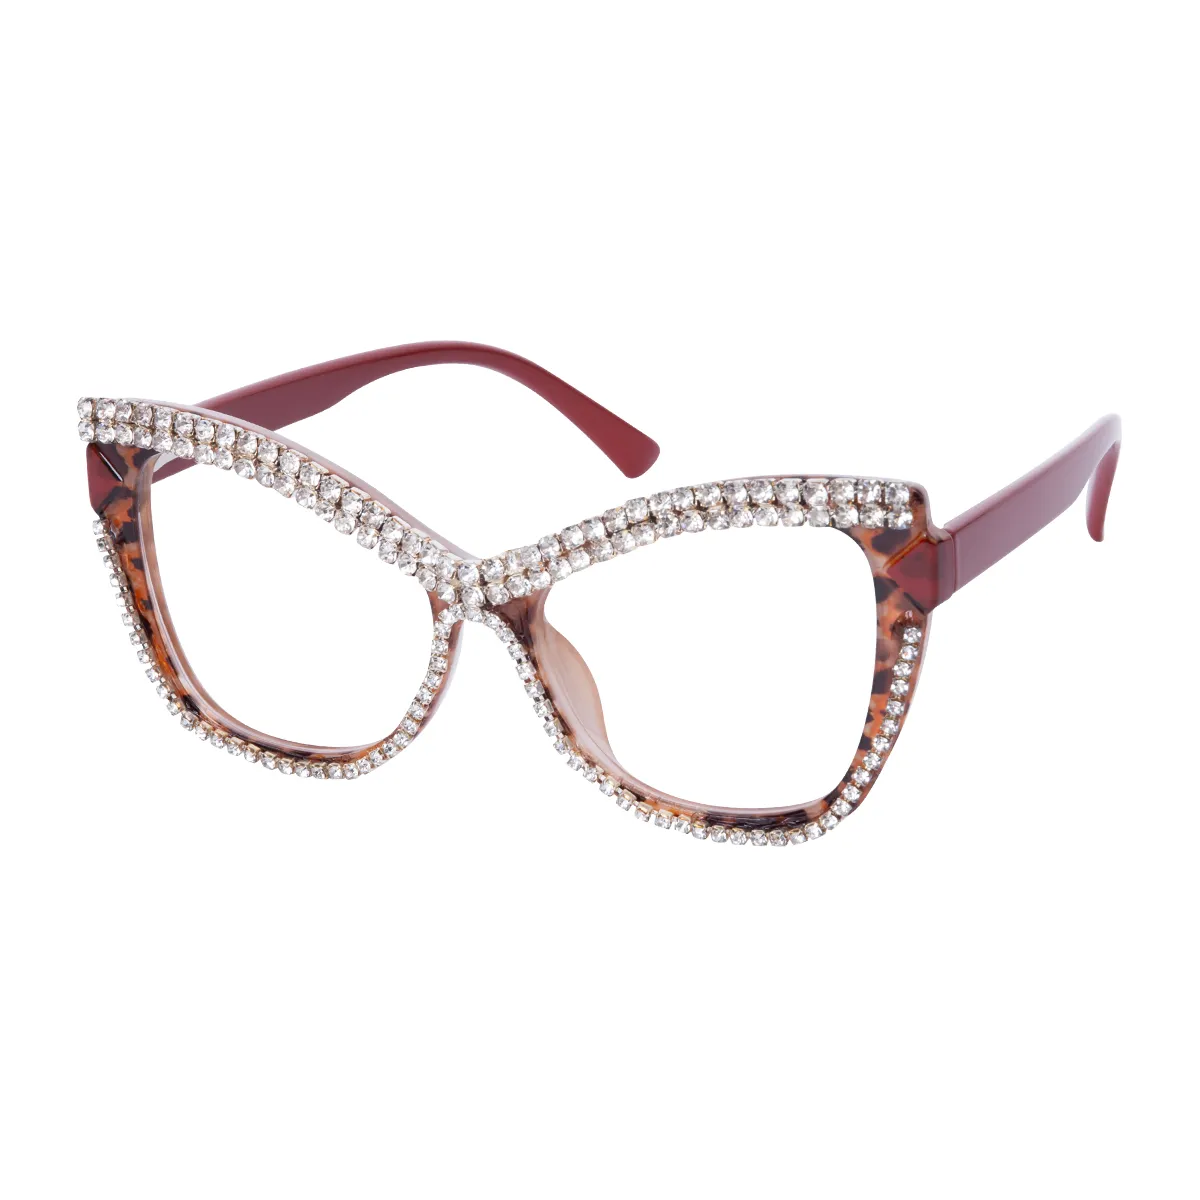 Freya - Cat-eye Tortoiseshell-Red Glasses for Women